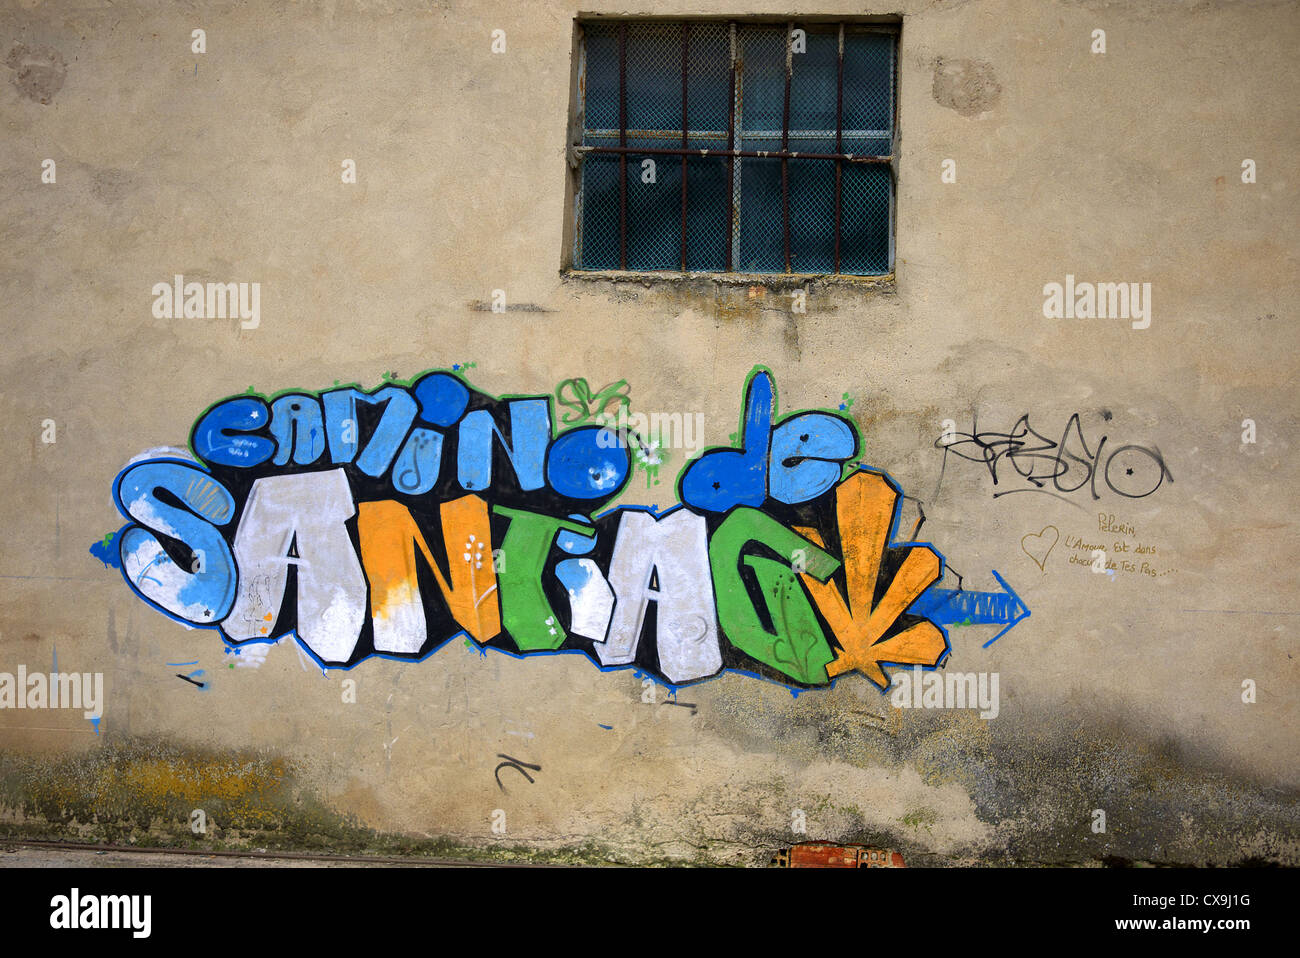 Camino de Santiago Graffiti Art Marker auf einem Gebäude in Spanien. Stockfoto